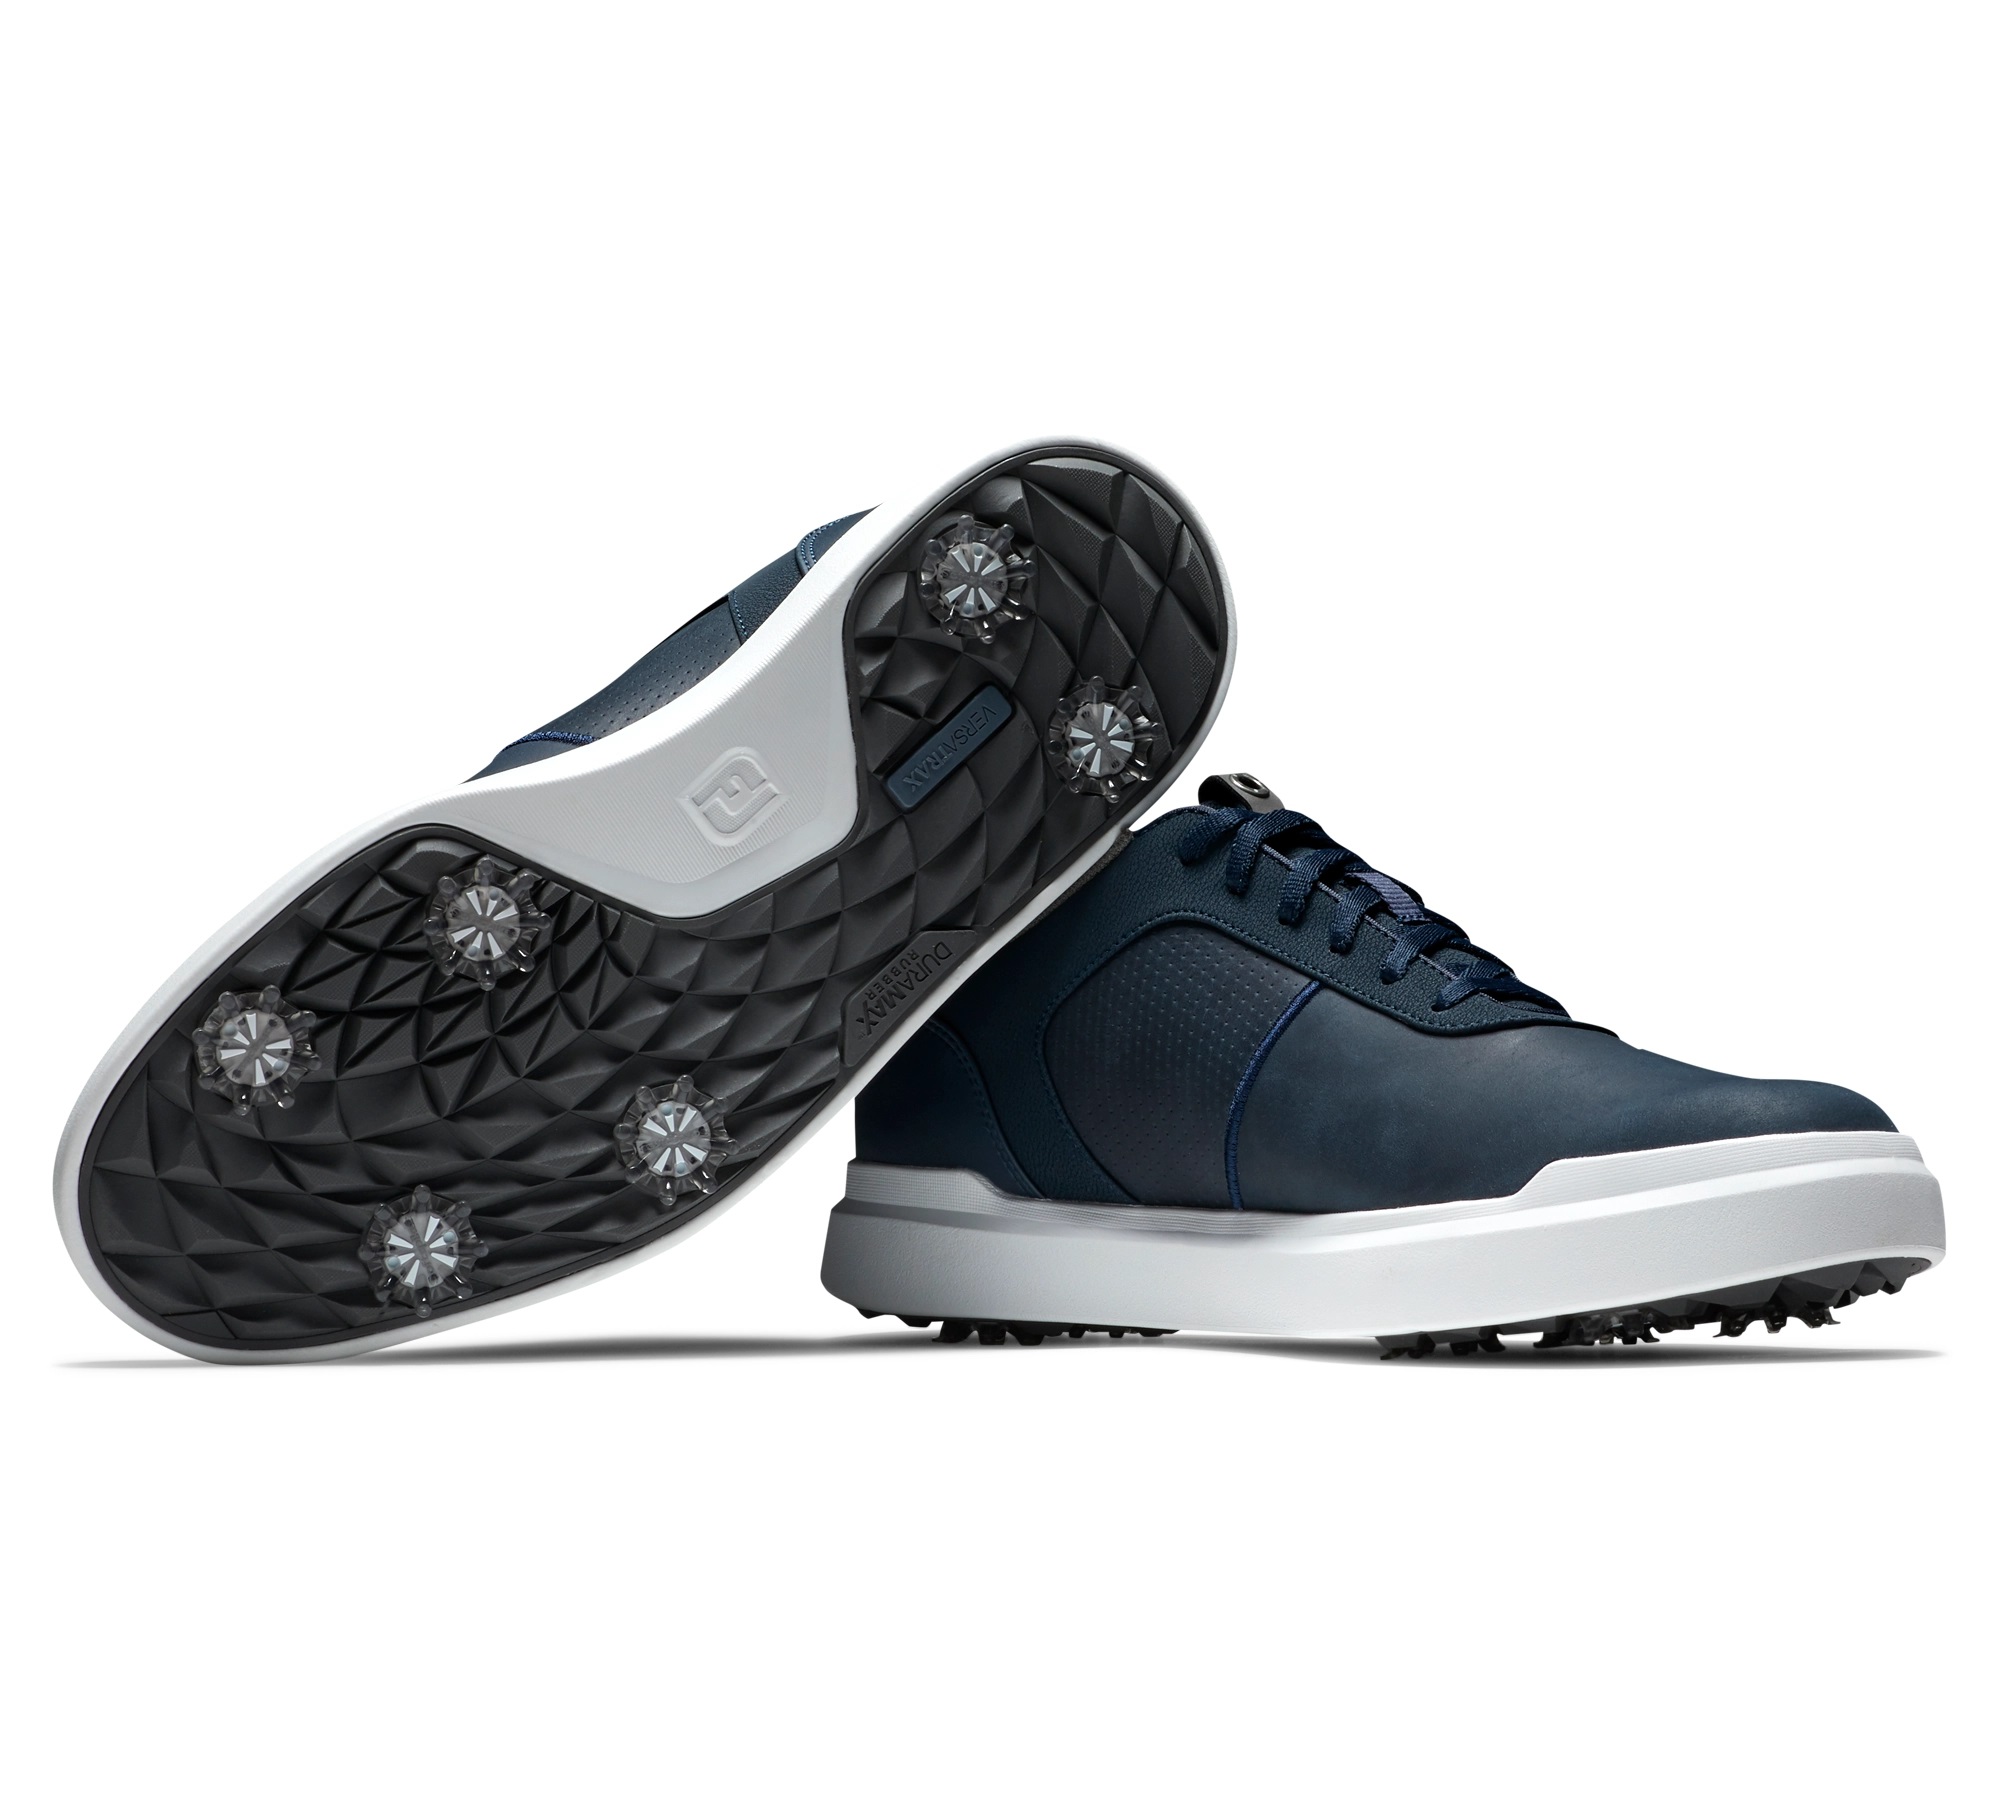 Giày FJ BF CONTOUR SERIES BLUBLUBLU - 54048 - Giày thể thao sân golf siêu đỉnh - Thiết kế màu sắc mạnh mẽ nổi bật